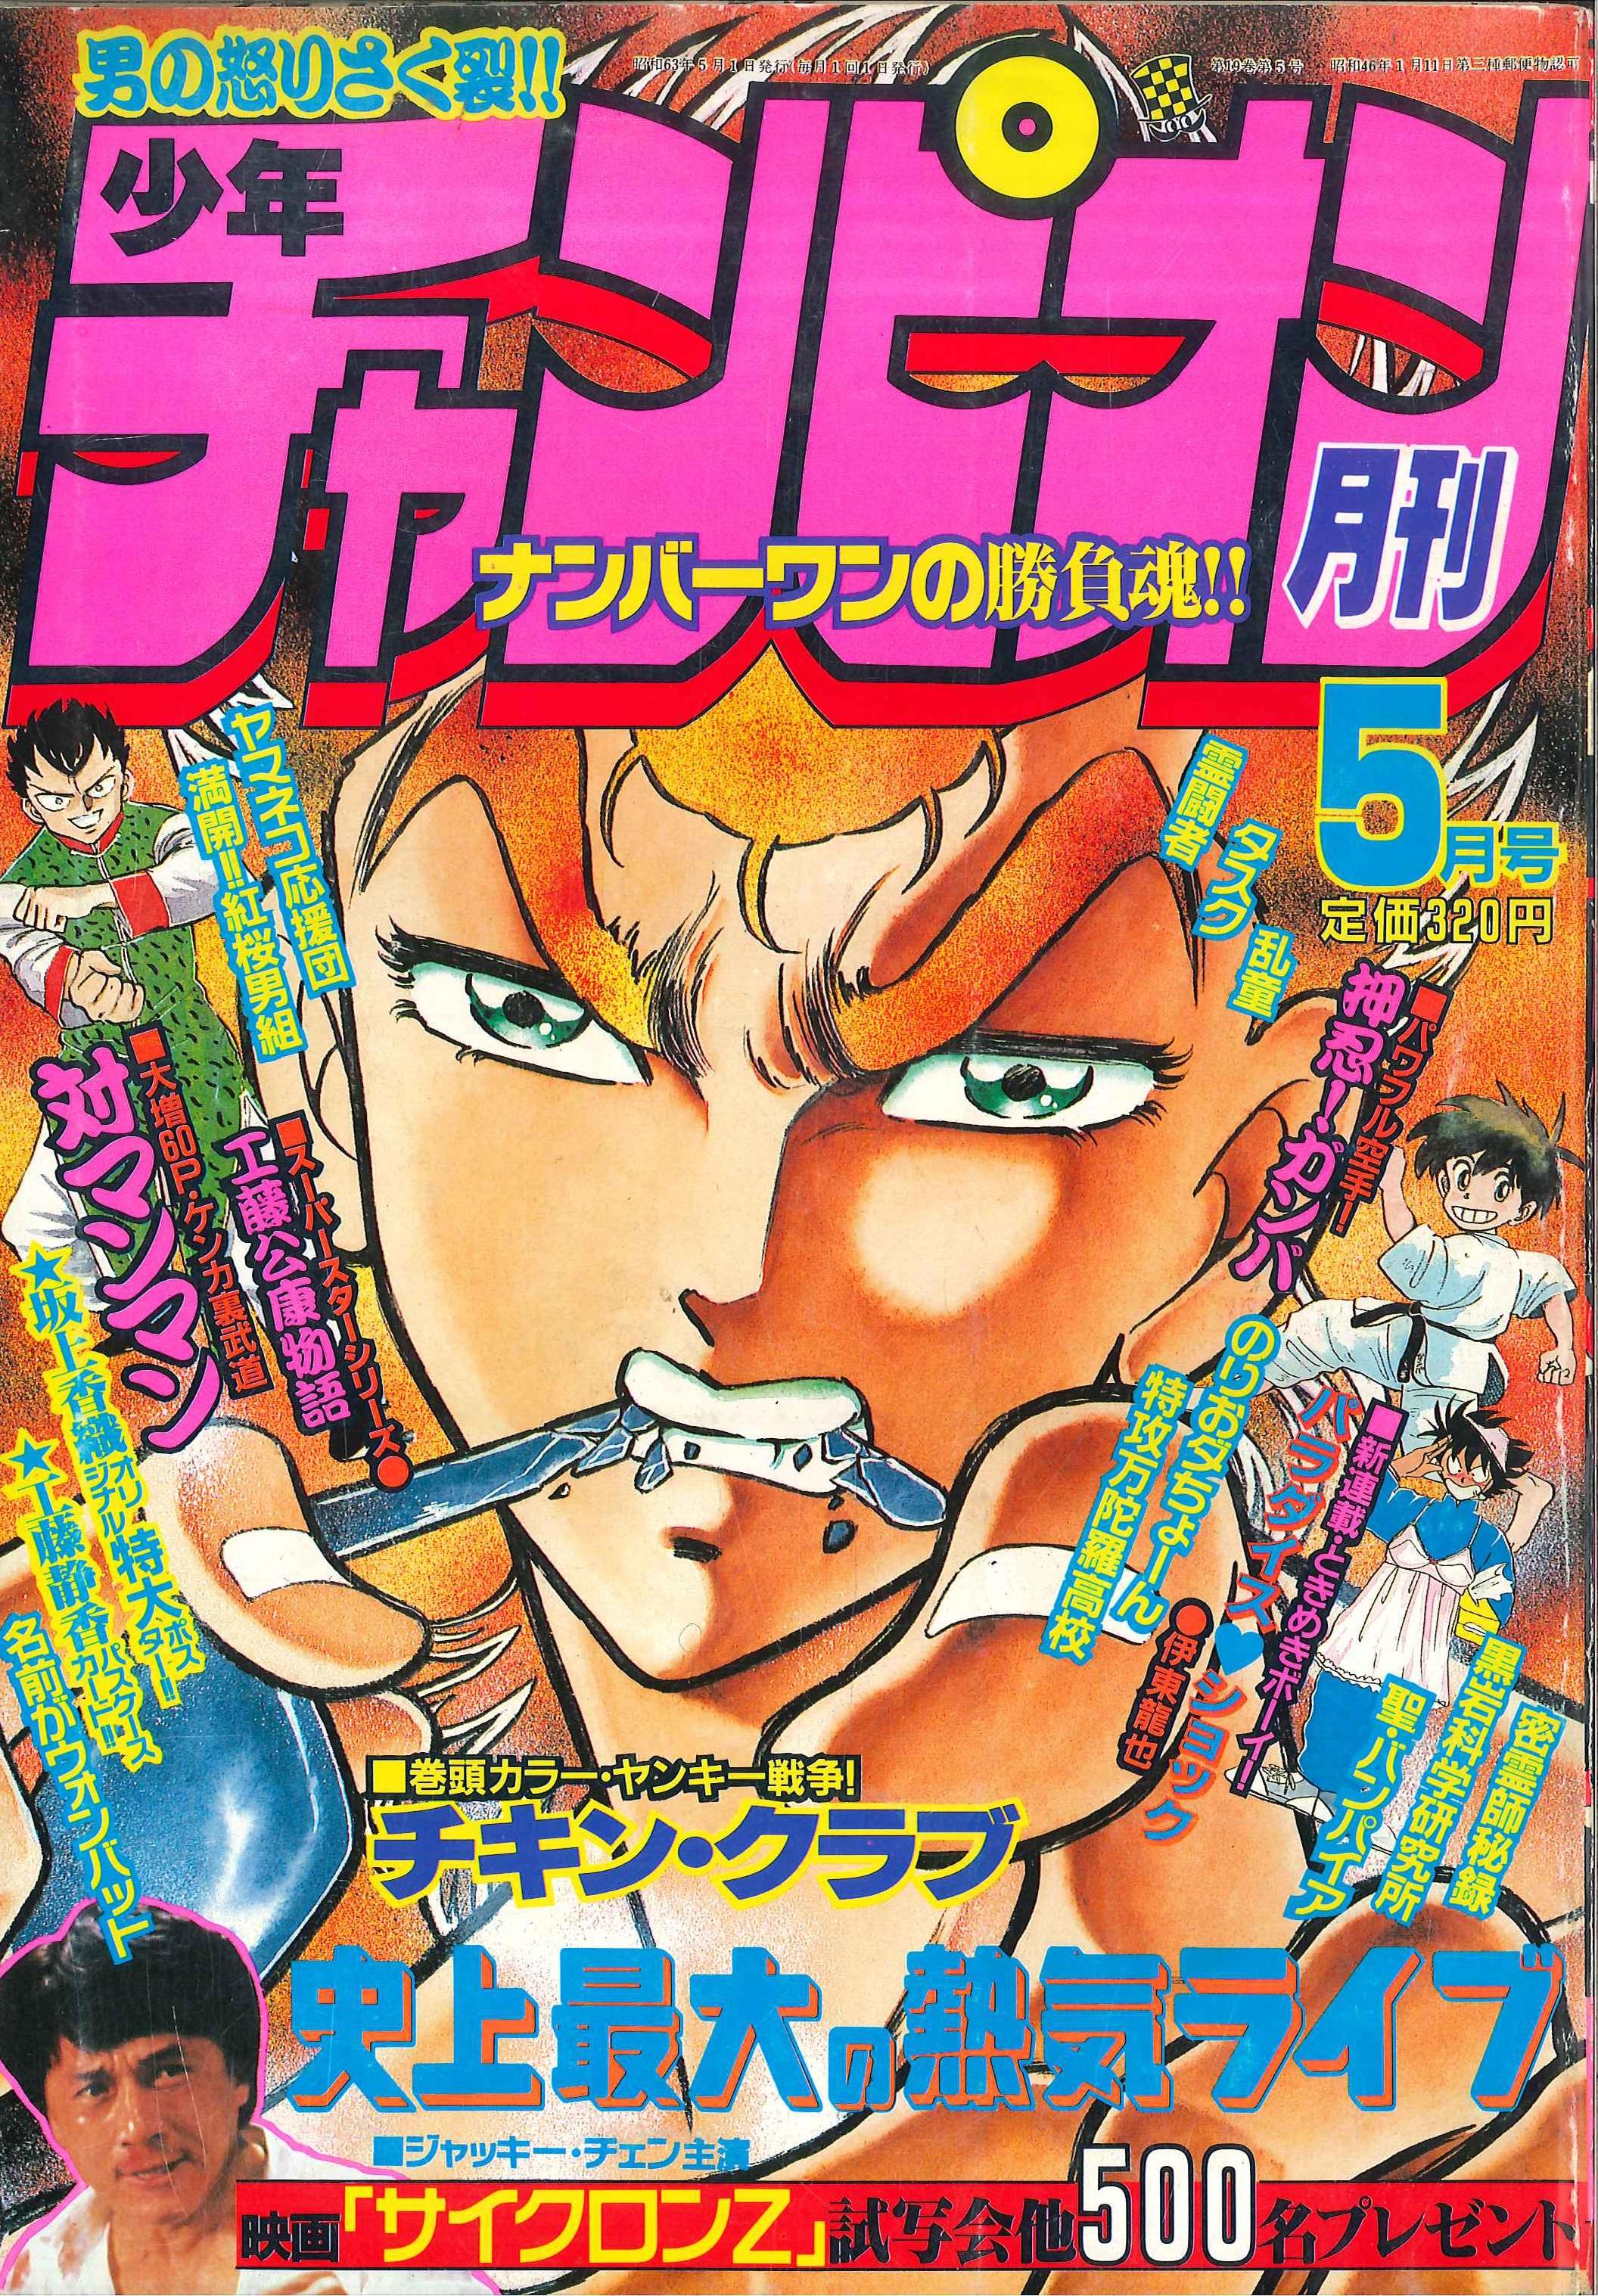 秋田書店 1988年(昭和63年)の漫画雑誌 『月刊少年チャンピオン 1988年